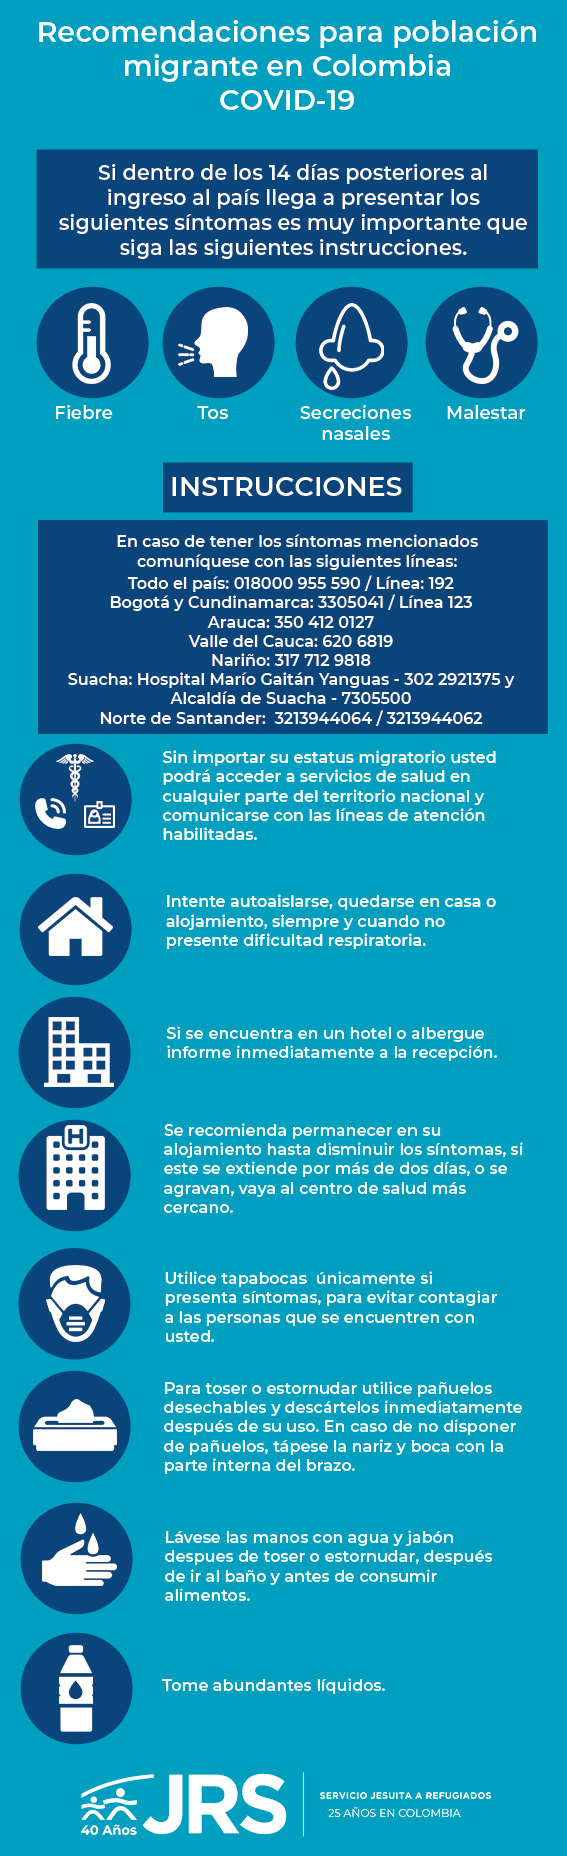 ¿Sabías que sin importar tu estatus migratorio puedes acceder a servicios de salud?